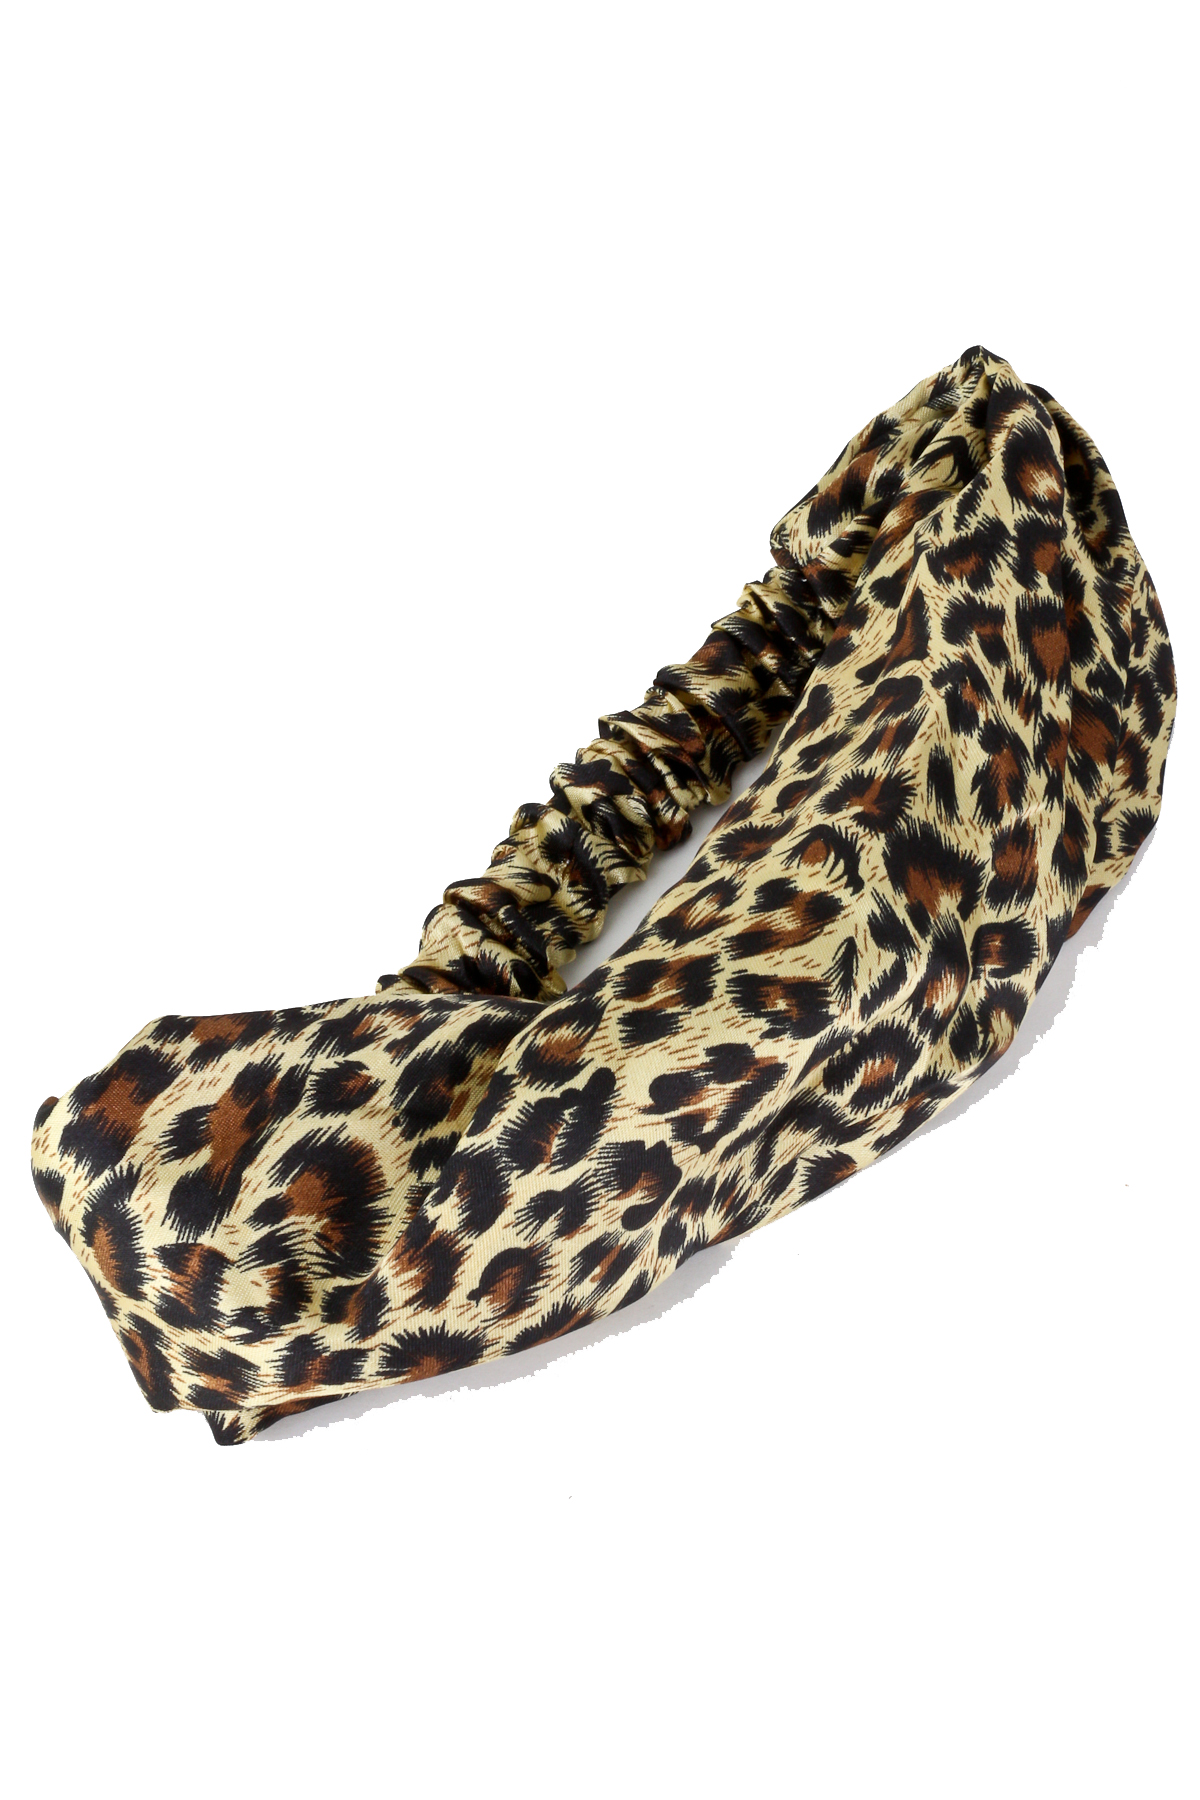 Cheetah Print Headband - Hair Accessories